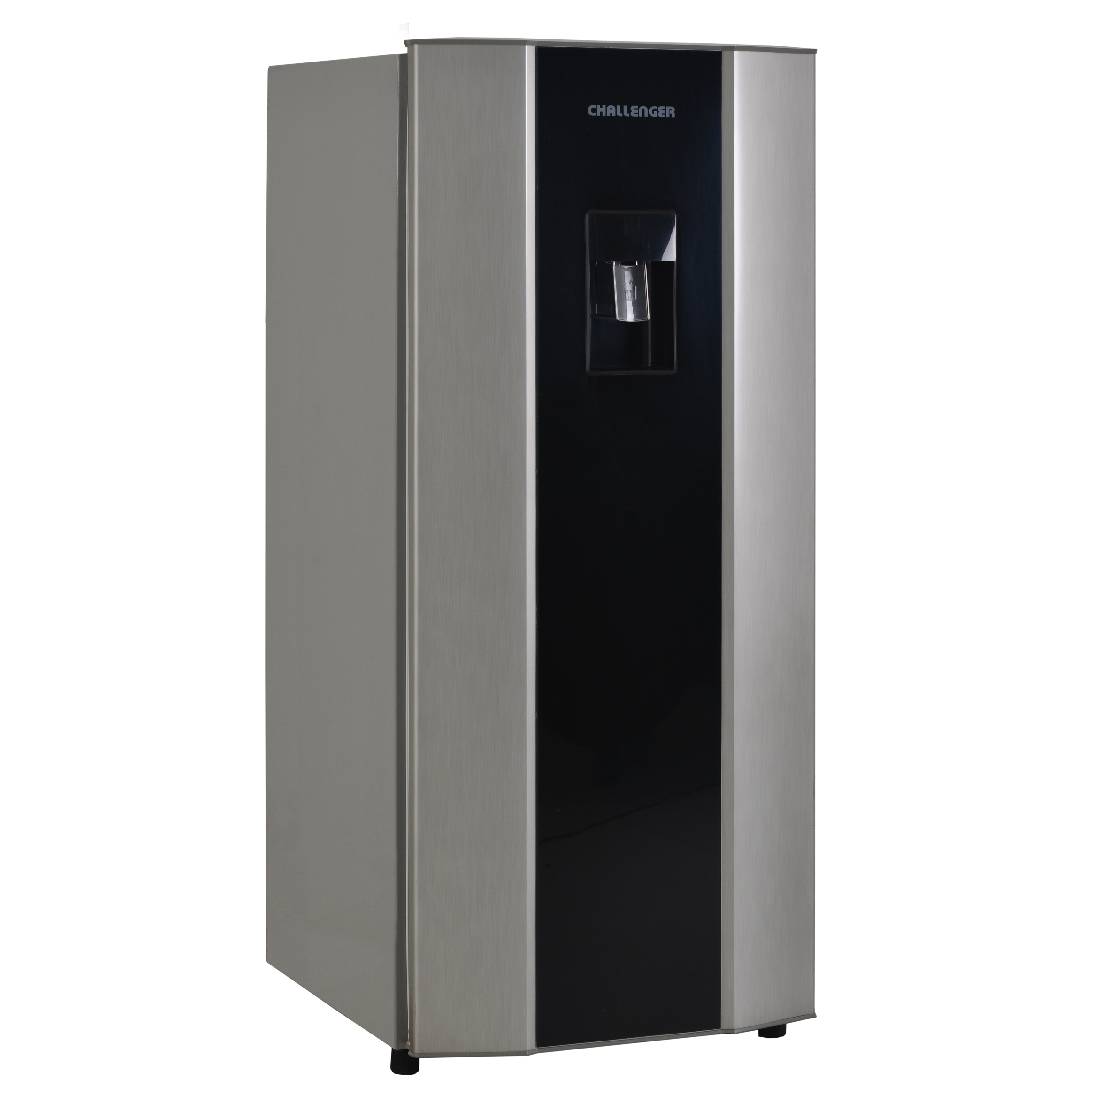 Refrigeradora CHALLENGER CR262 Frost Gris con Acrílico 250 Litros